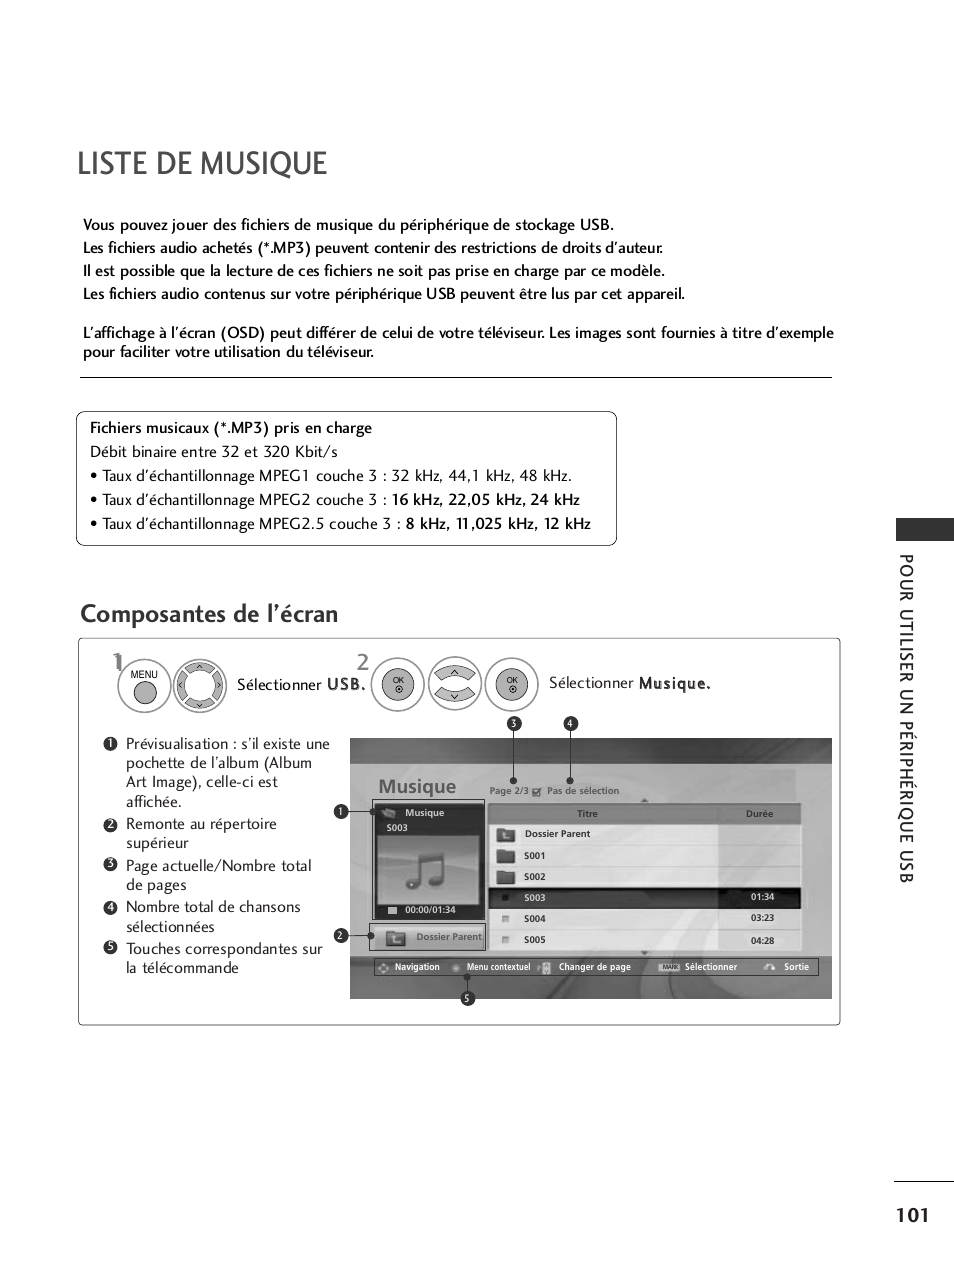 Liste de musique, Composantes de l’écran, Pour utiliser un périphérique usb | Musique | LG 32LH40 Manuel d'utilisation | Page 103 / 180